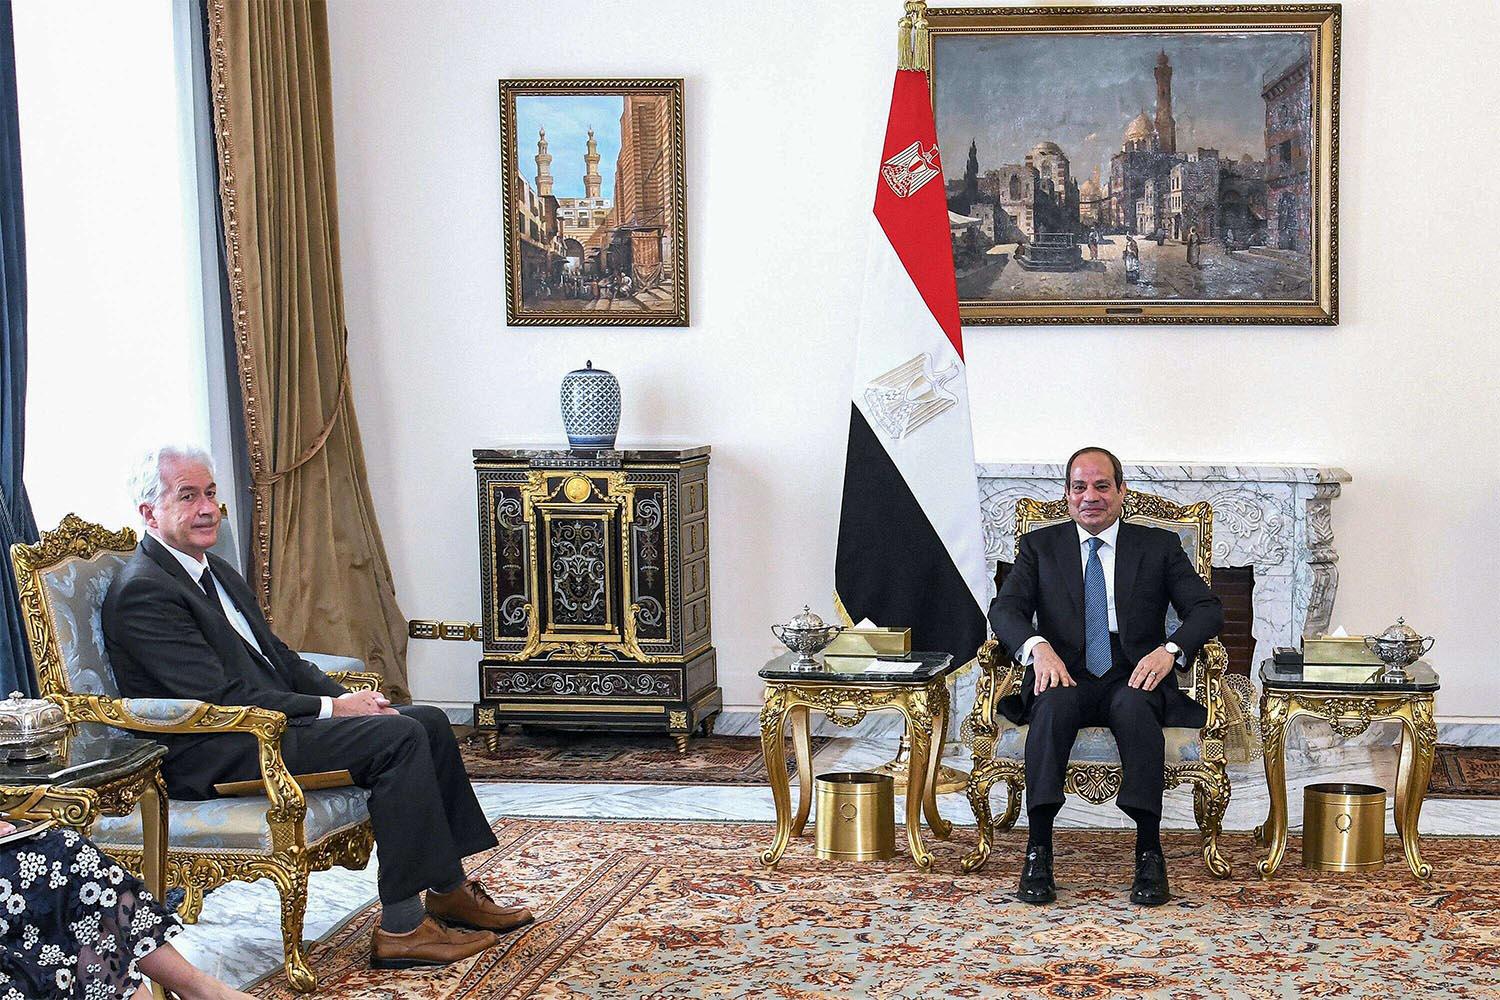 CIA Director William Burns with Egypt's President Abdel Fattah al-Sisi